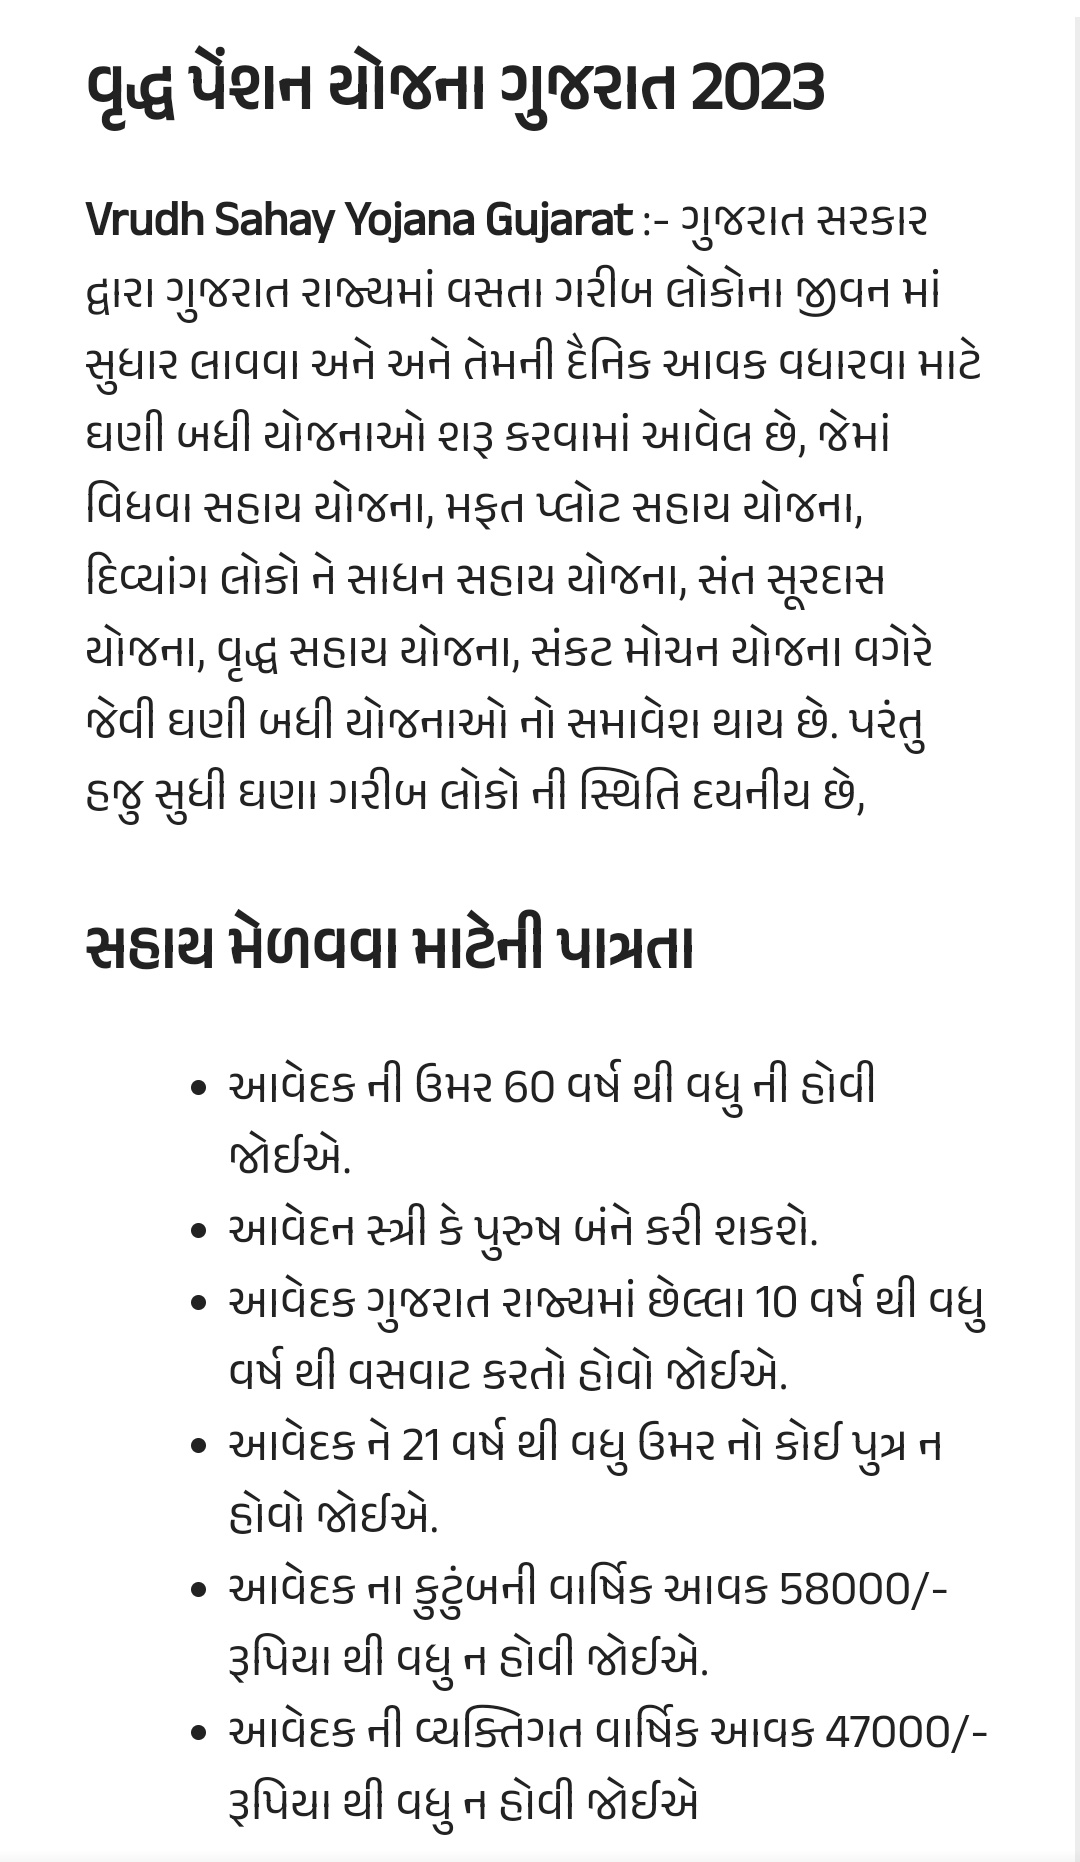 Vrudh Sahay Yojana Gujarat Form 2023